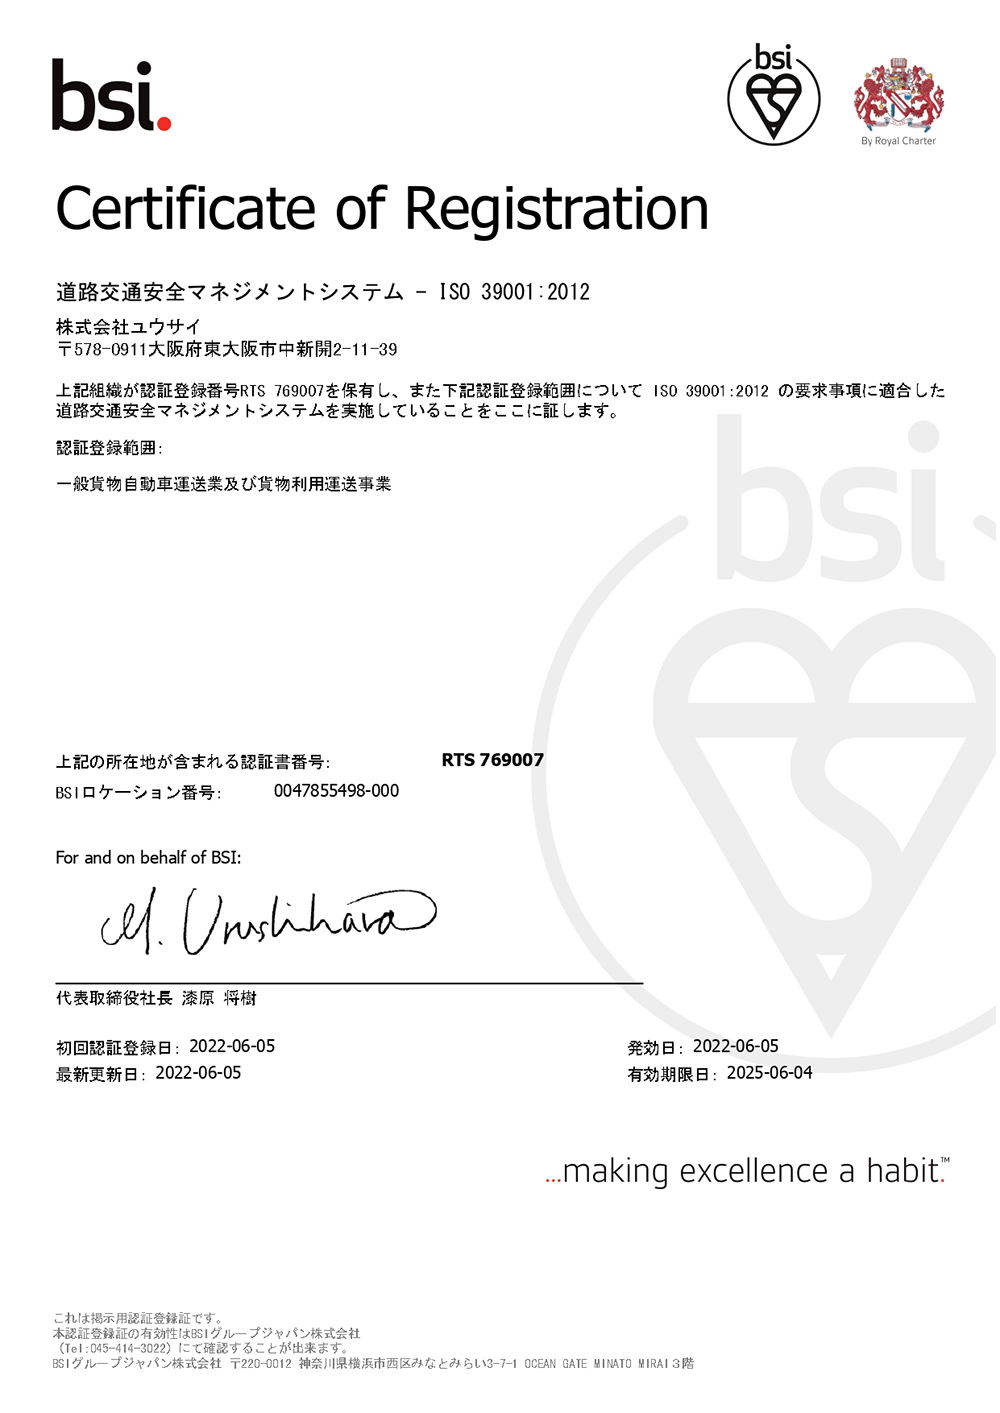 ISO39001認証に関する表示